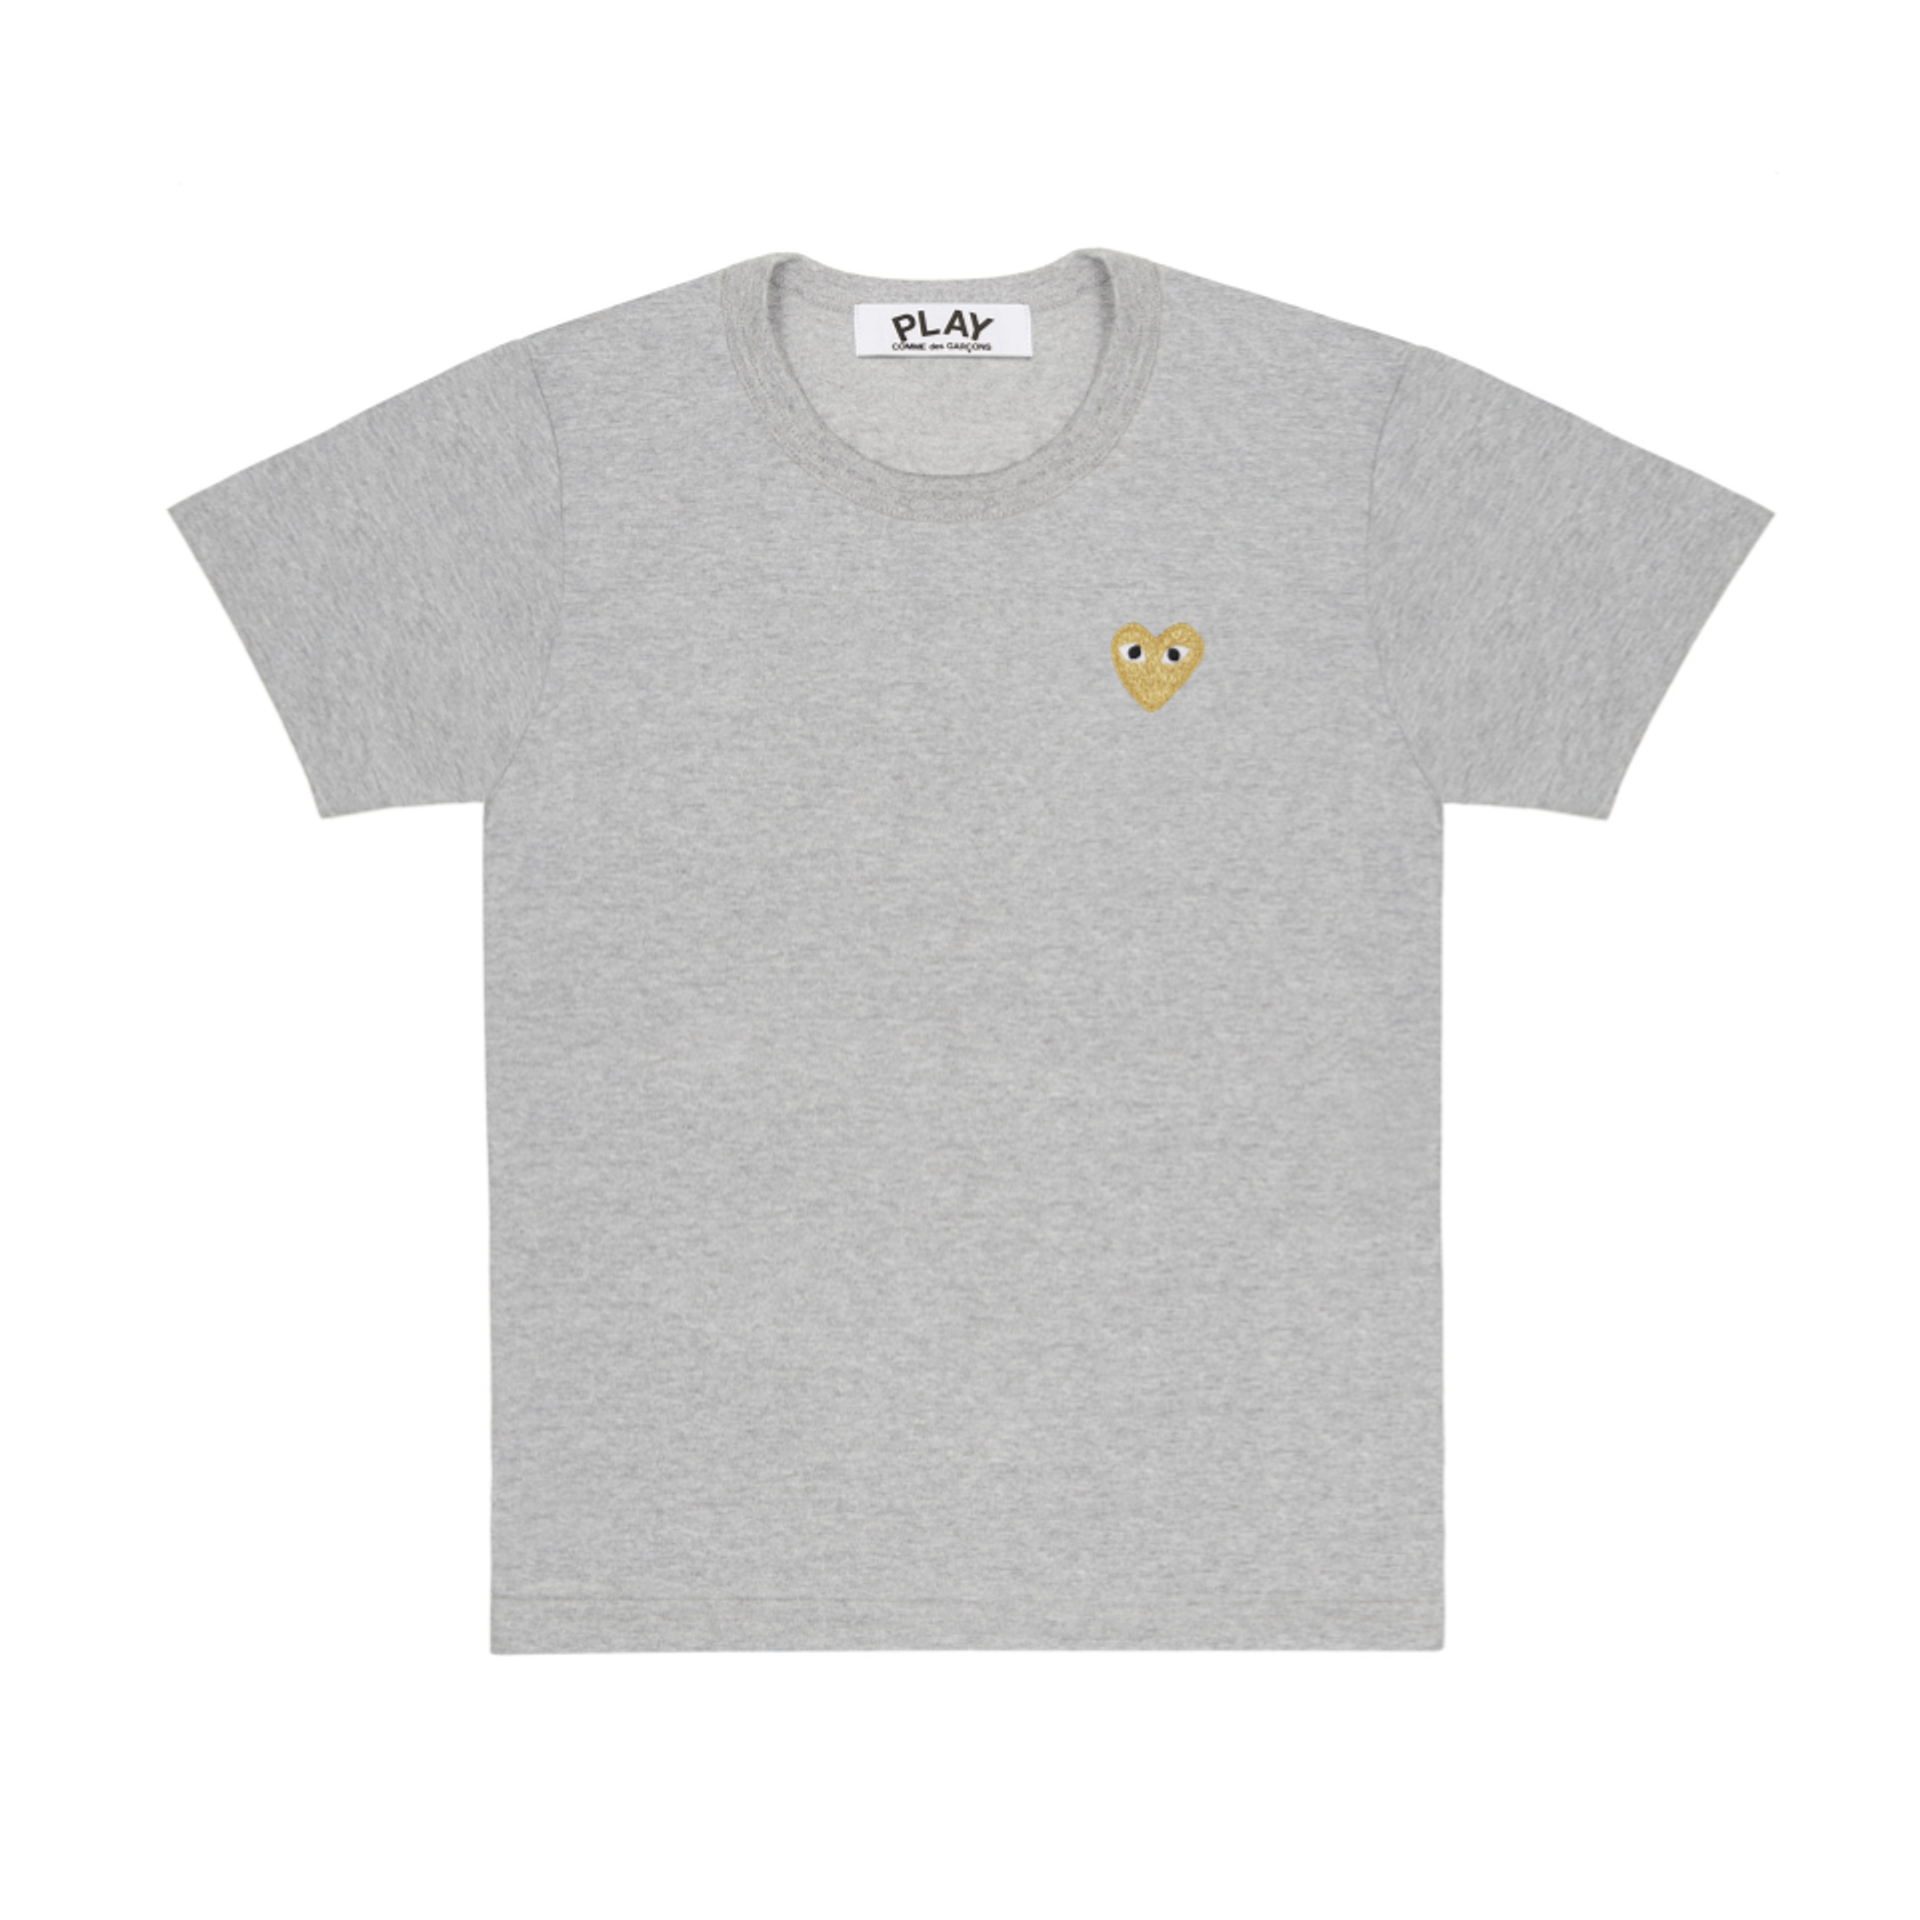 PLAY Gold Heart T-Shirt Top Grey Men's